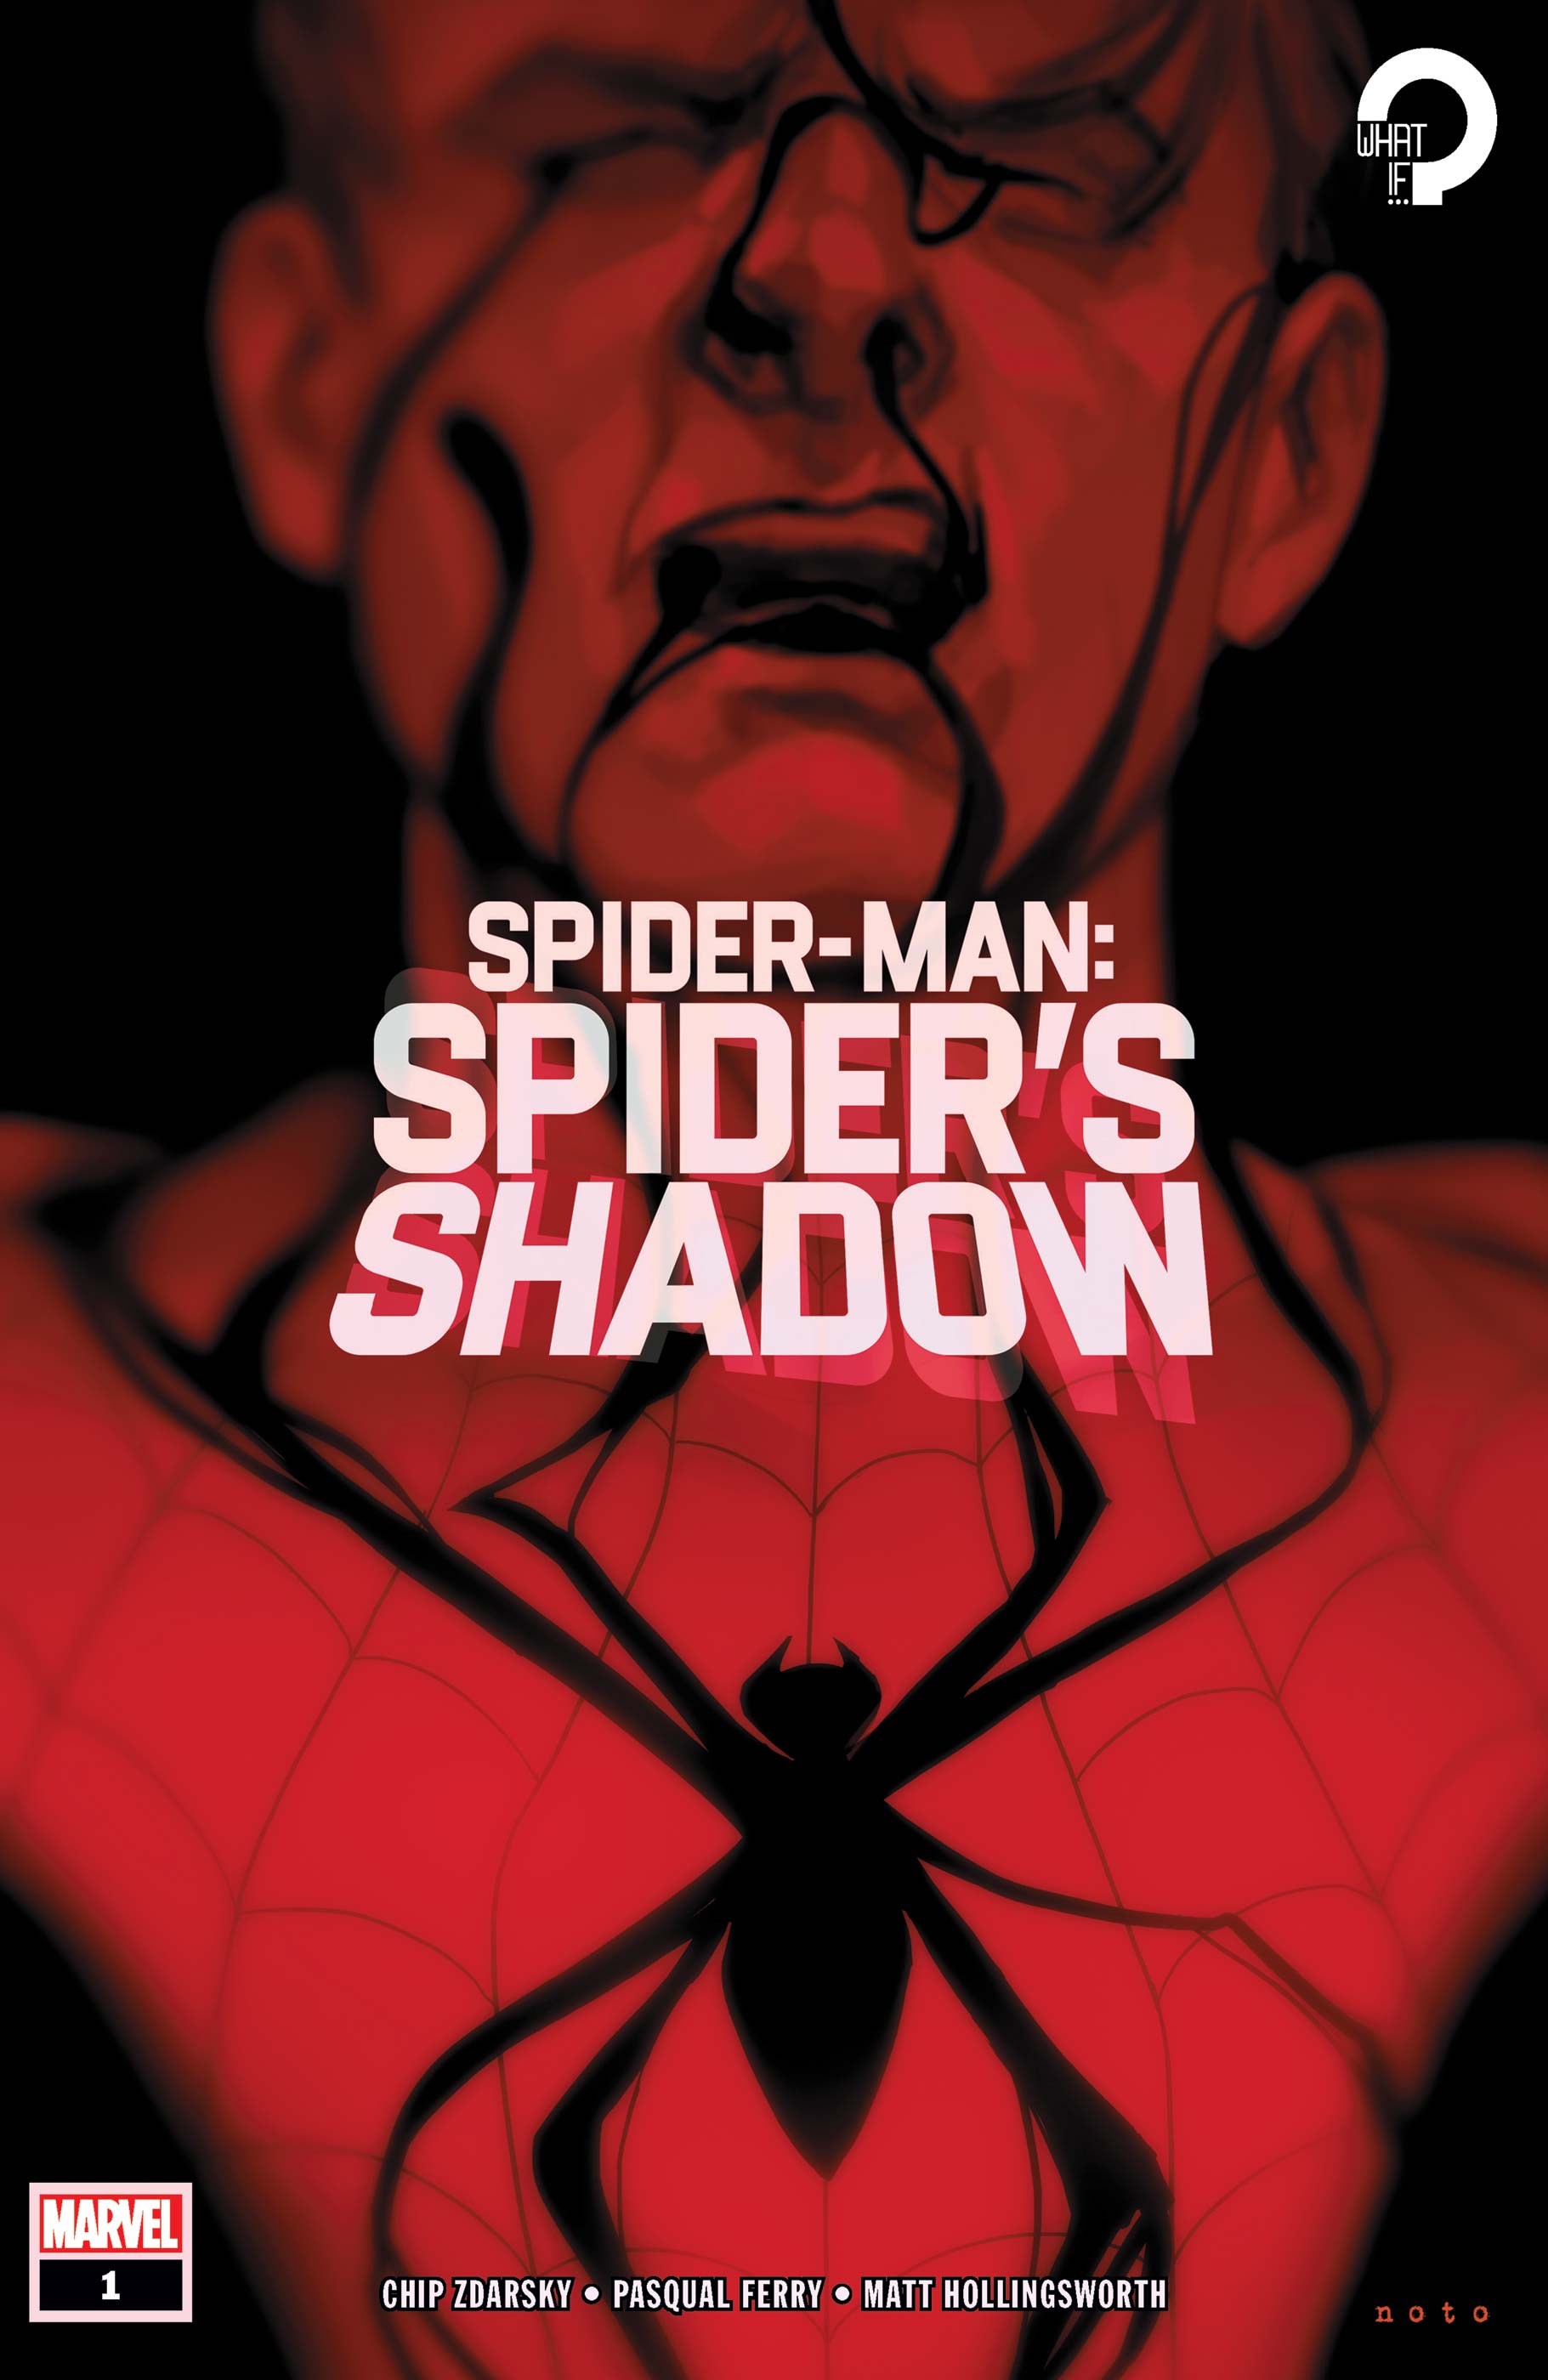 Shadow spider man